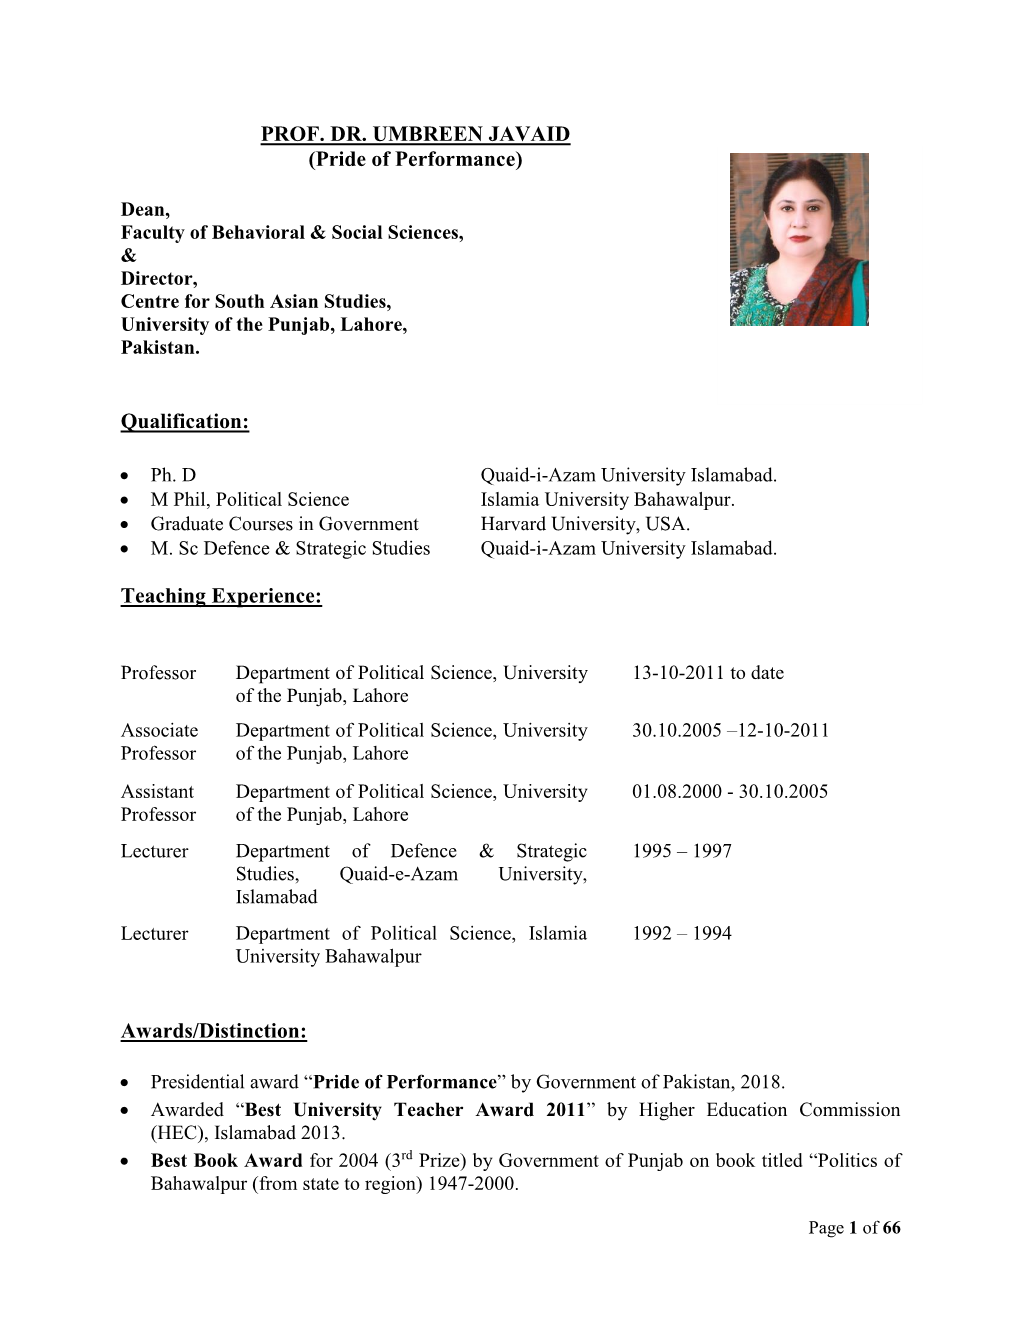 CV of Prof. Dr. Umbreen Javaid